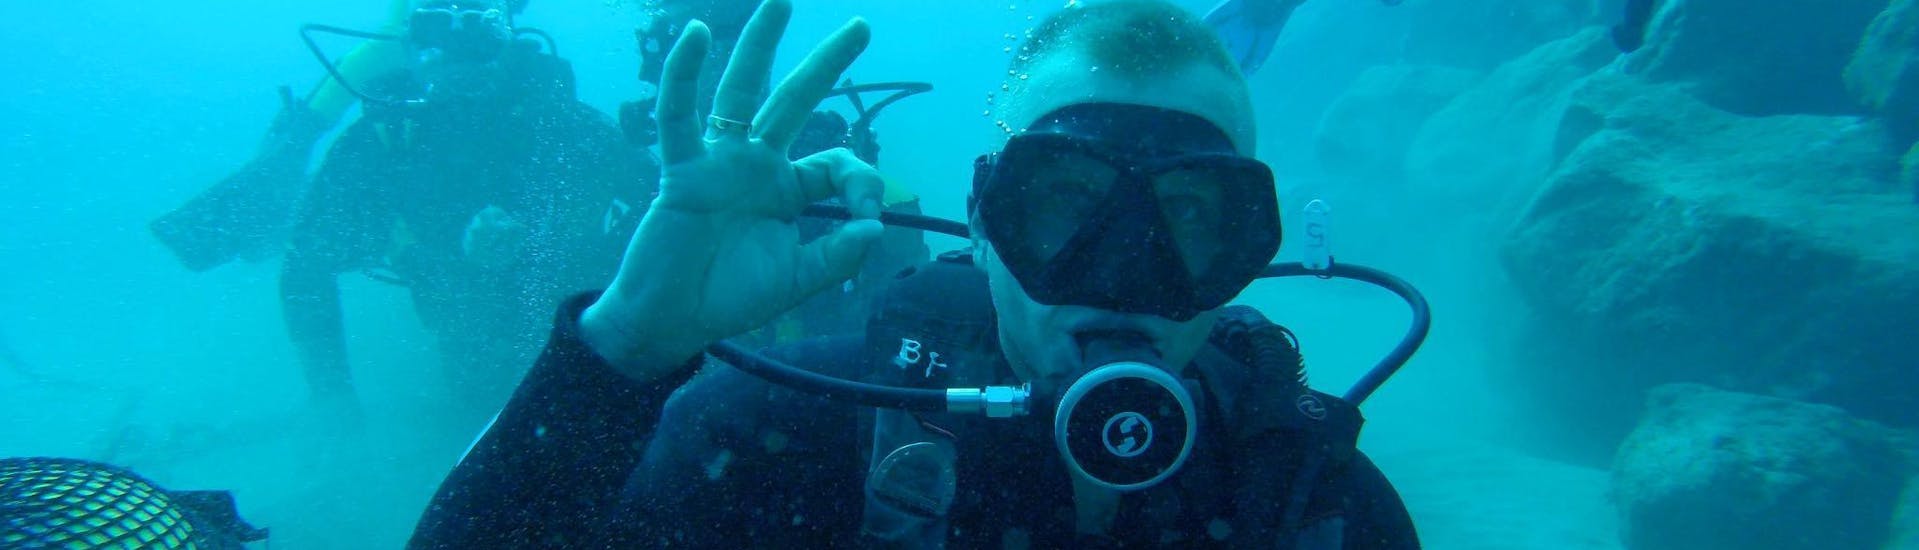 scuba-diving-course-for-beginners-padi-open-water-diver-big-fish-tenerife-hero